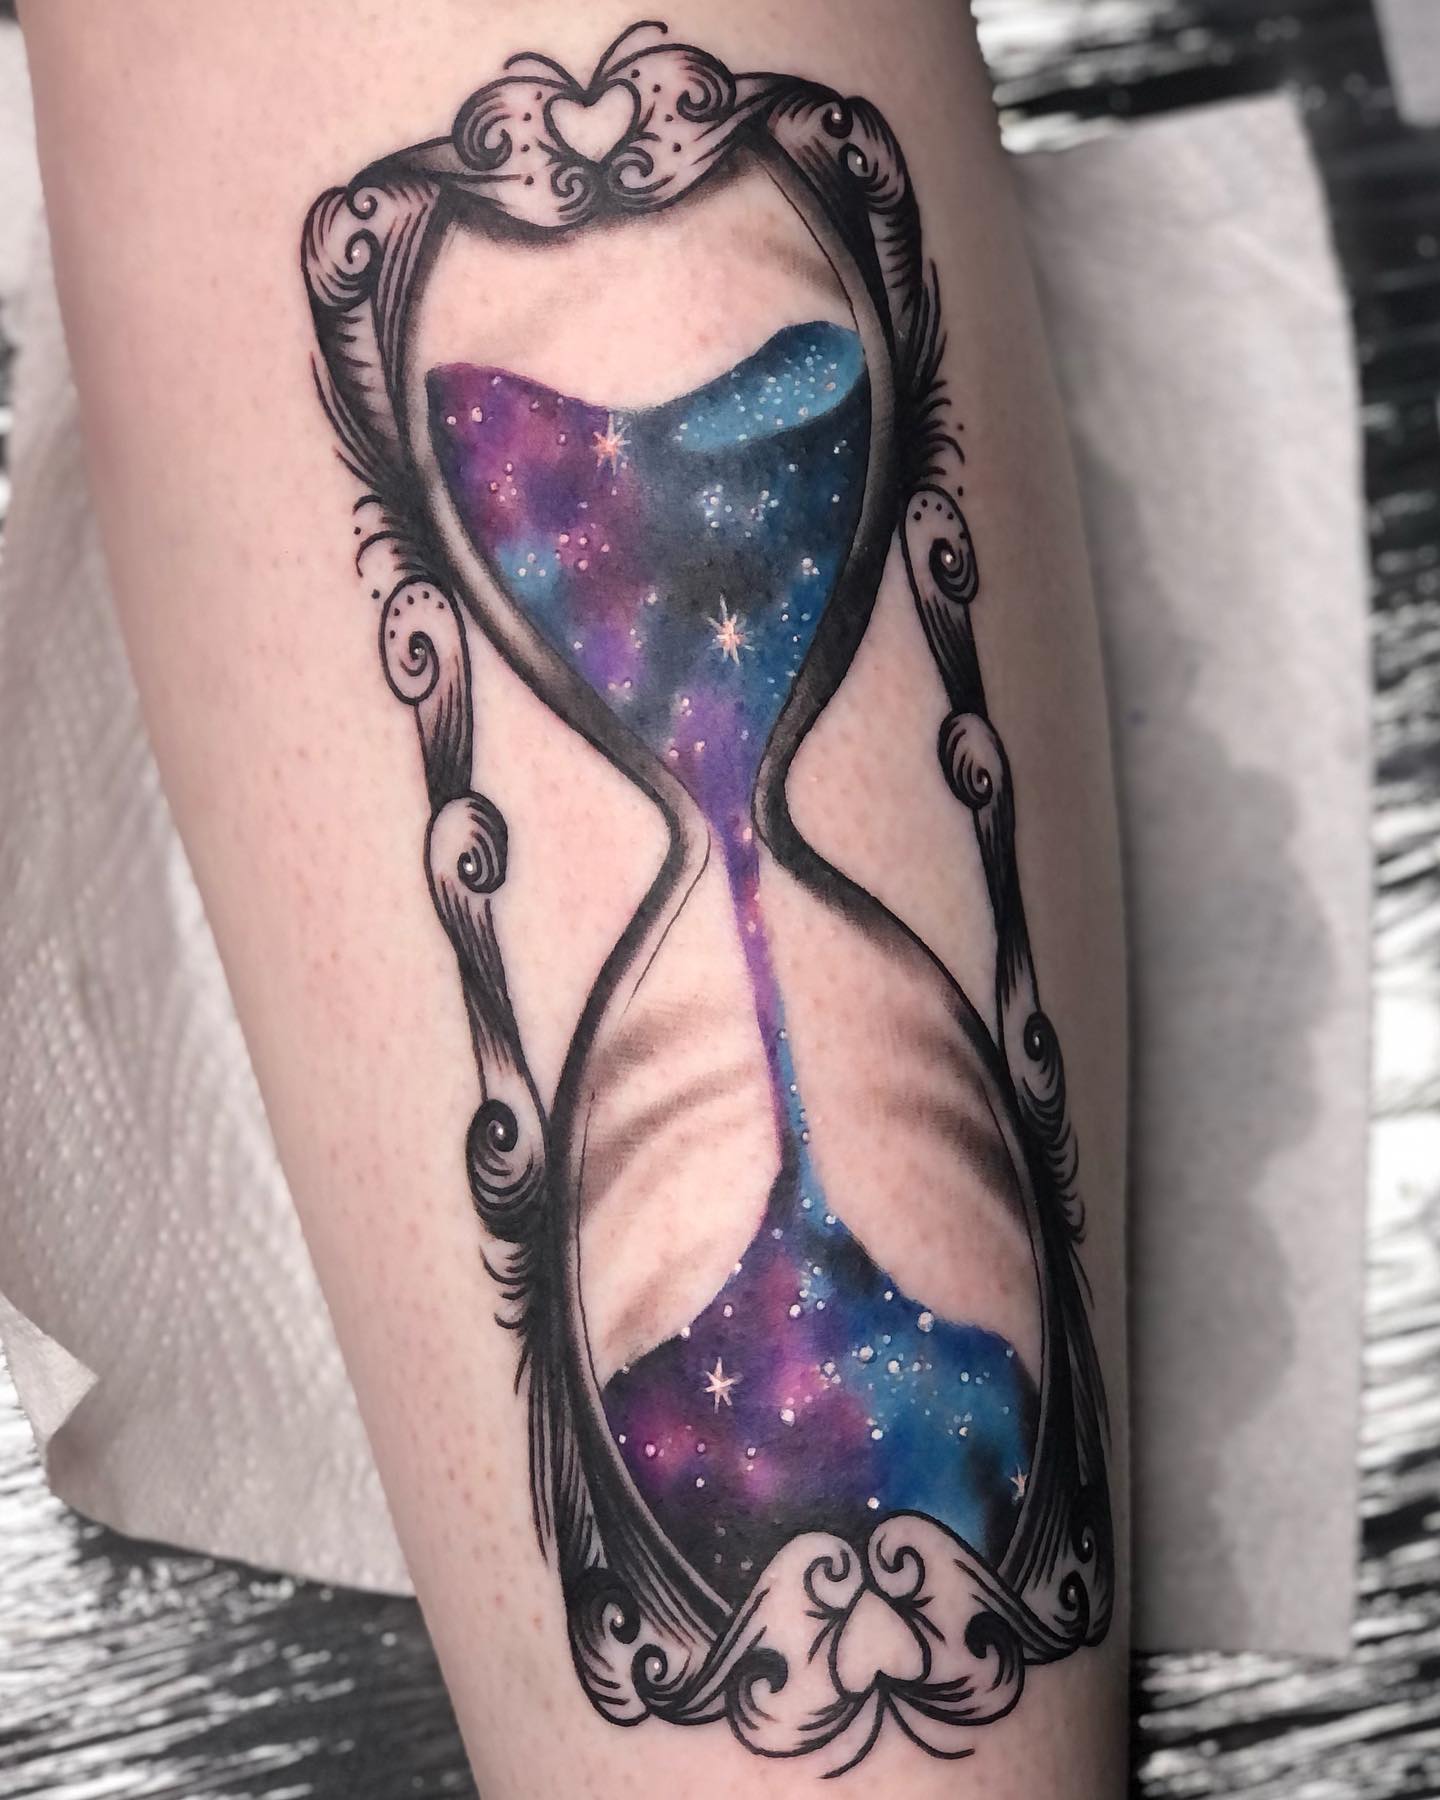 Tatuaje de reloj de arena mágico púrpura.